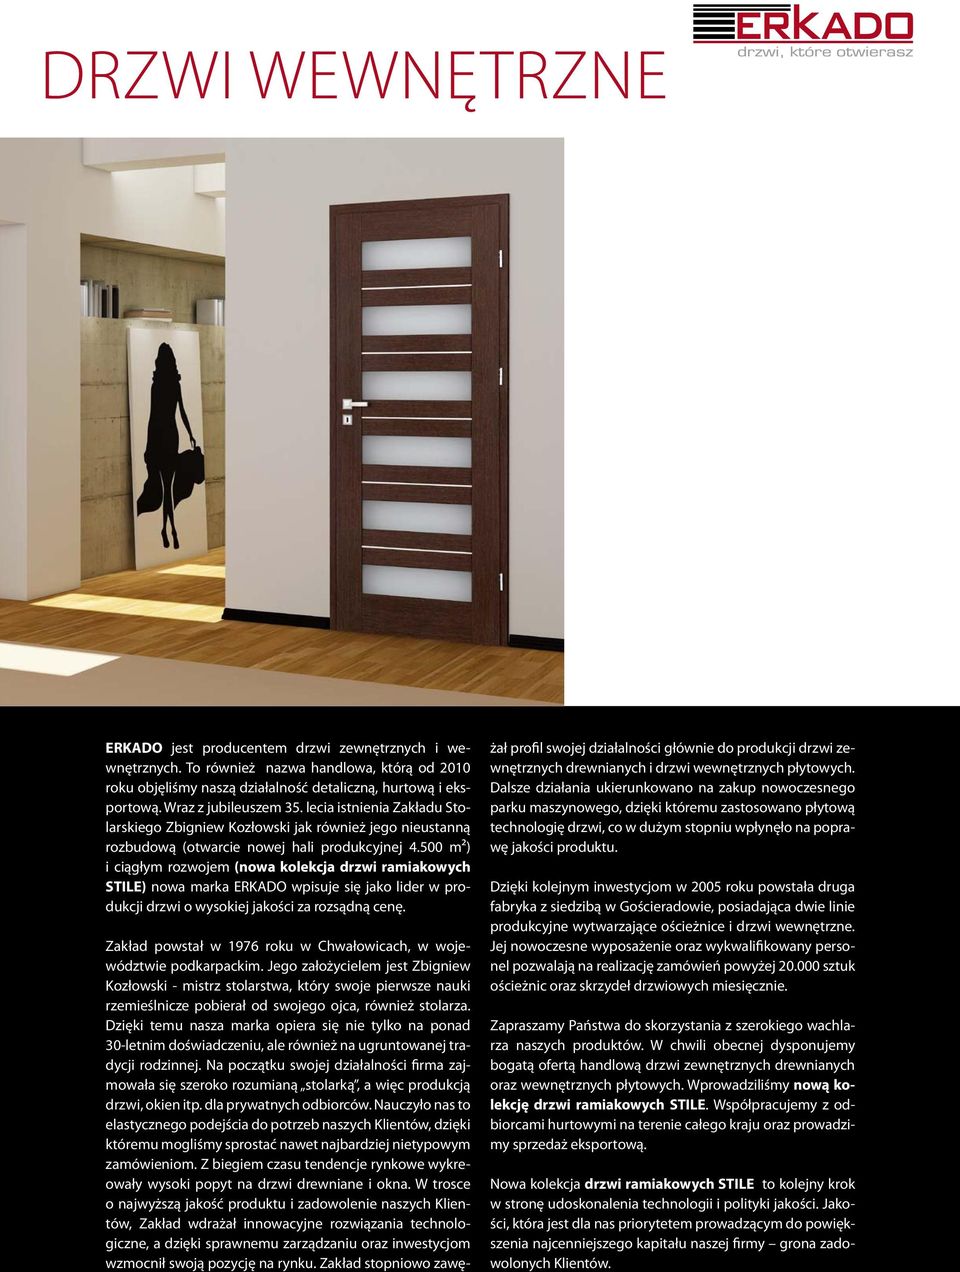 500 m²) i ciągłym rozwojem (nowa kolekcja drzwi ramiakowych STILE) nowa marka ERKADO wpisuje się jako lider w produkcji drzwi o wysokiej jakości za rozsądną cenę.